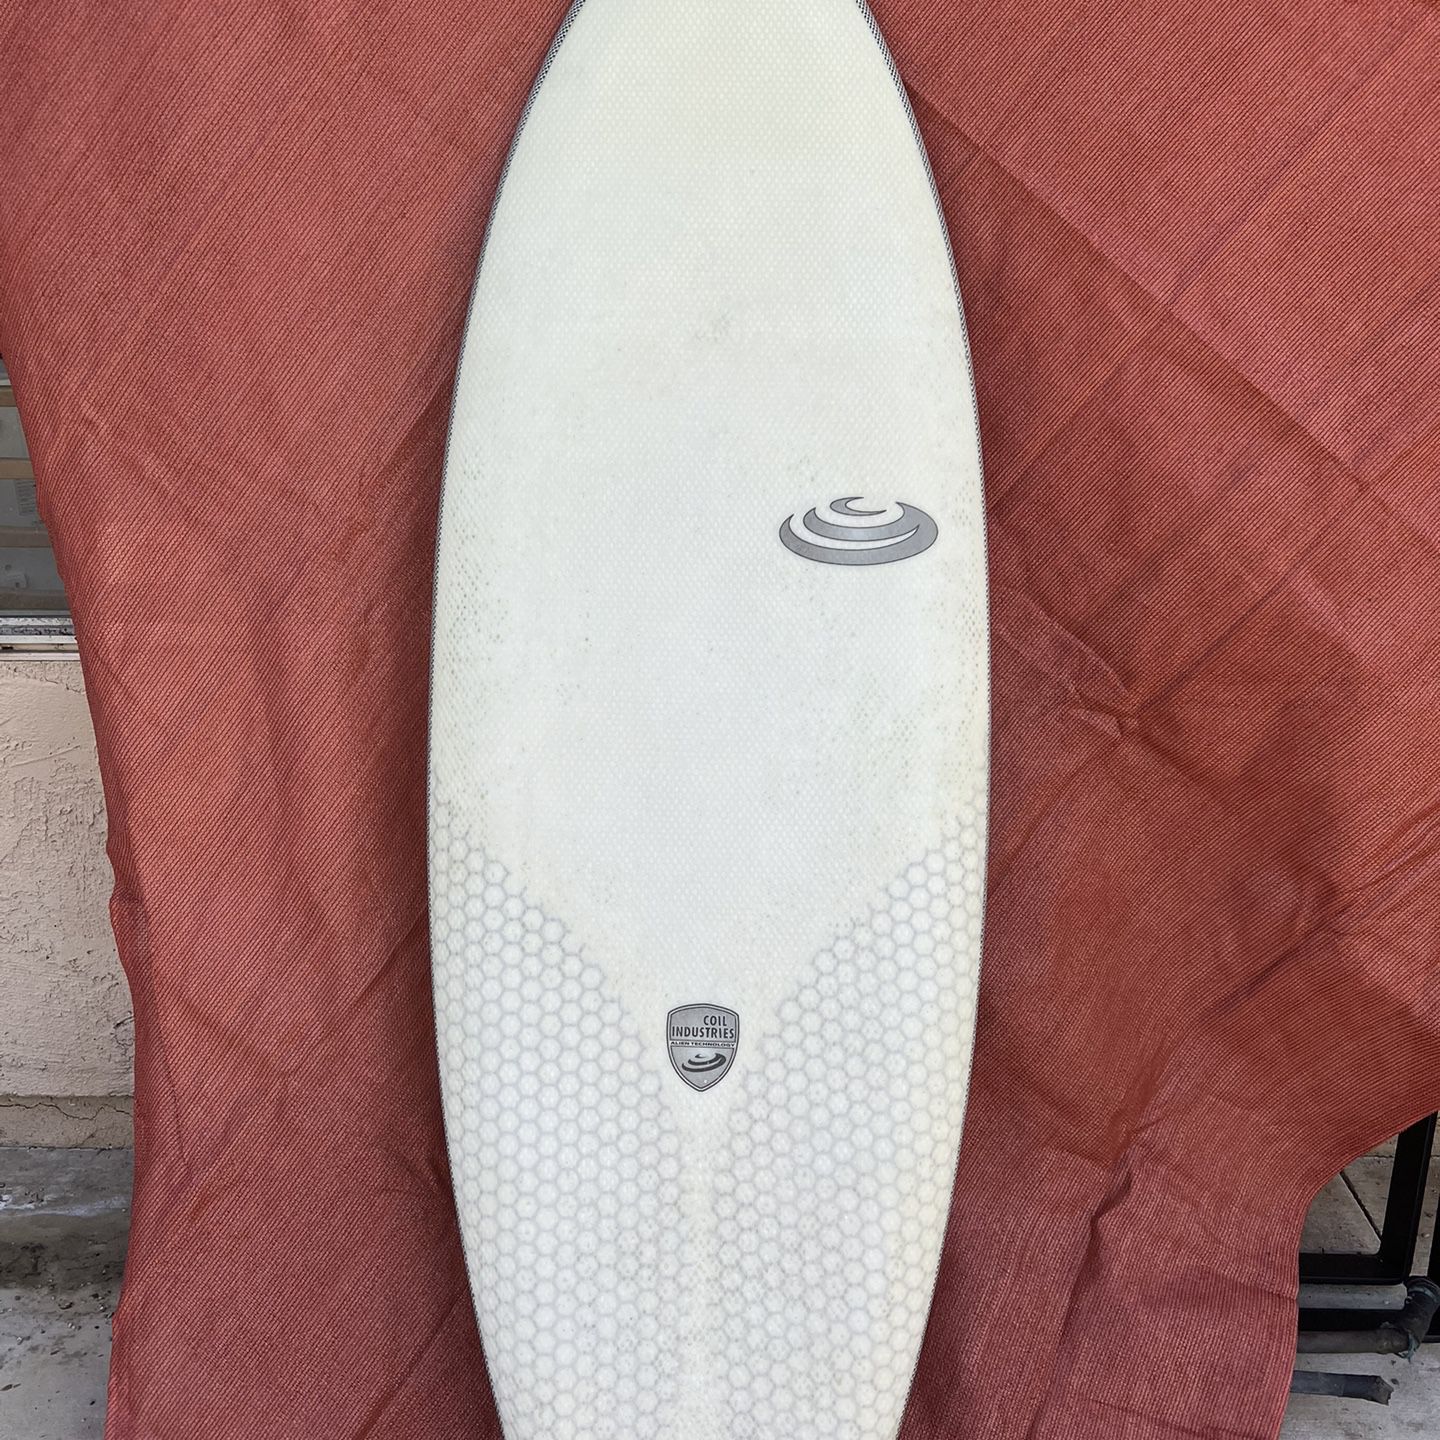 Coil Megamind Surfboard